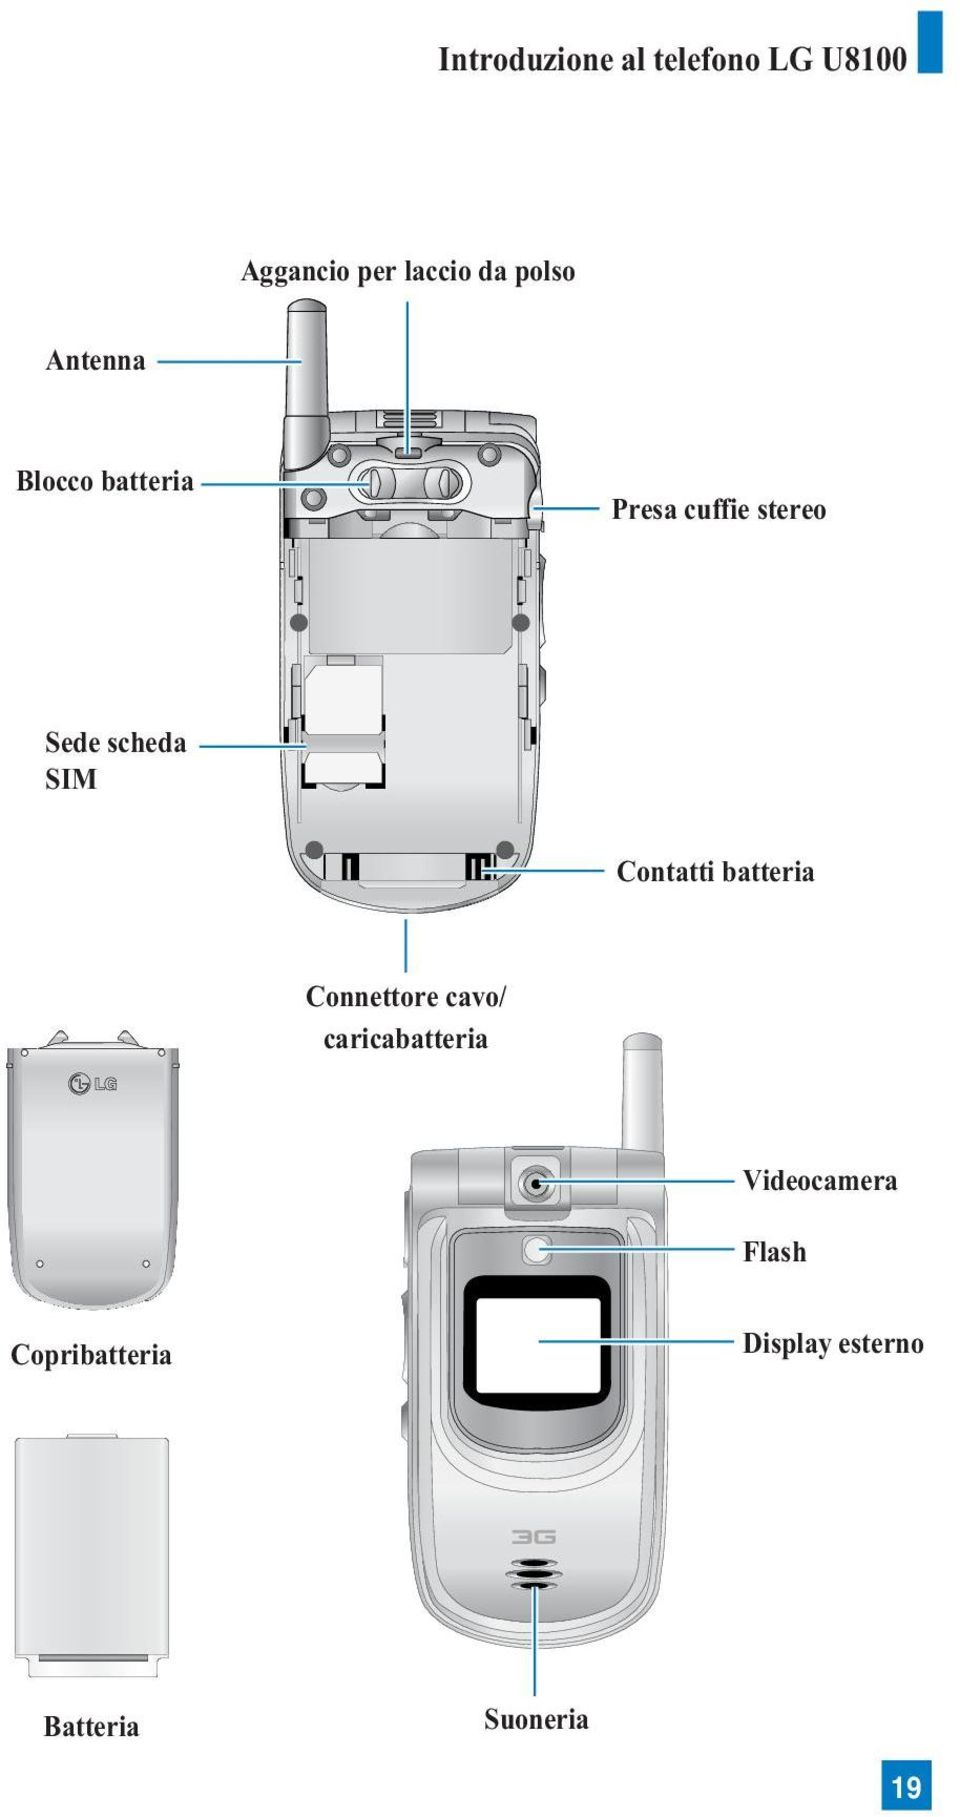 scheda SIM Contatti batteria Connettore cavo/ caricabatteria